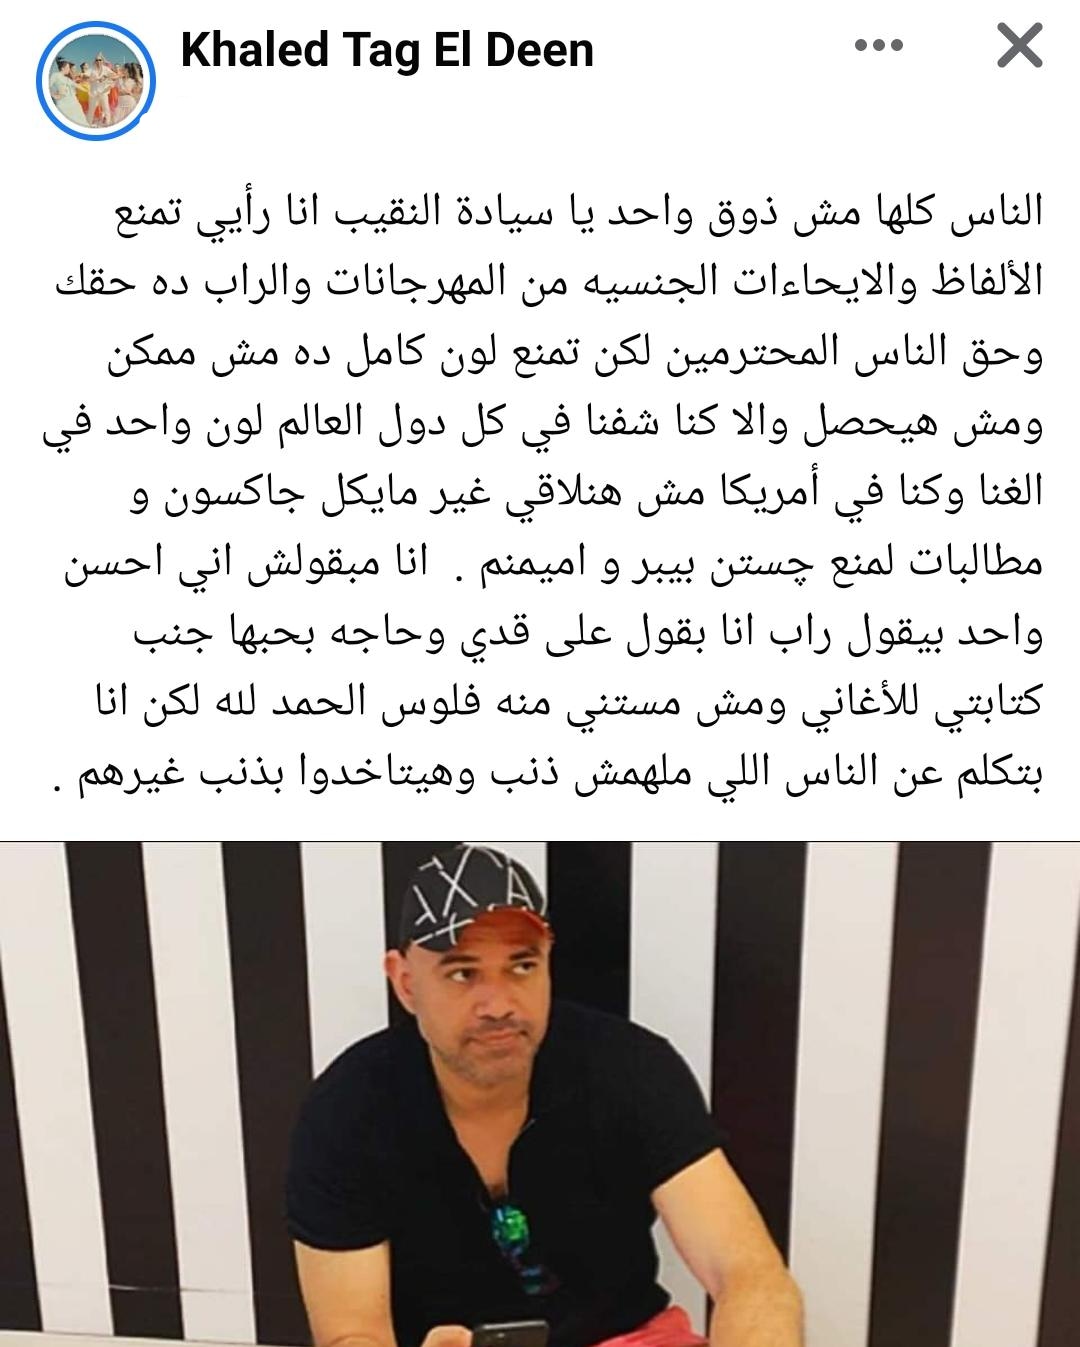 خالد تاج الدين لـ هاني شاكر: "مش من حقك تمنع لون كامل وده مش هيحصل" 2